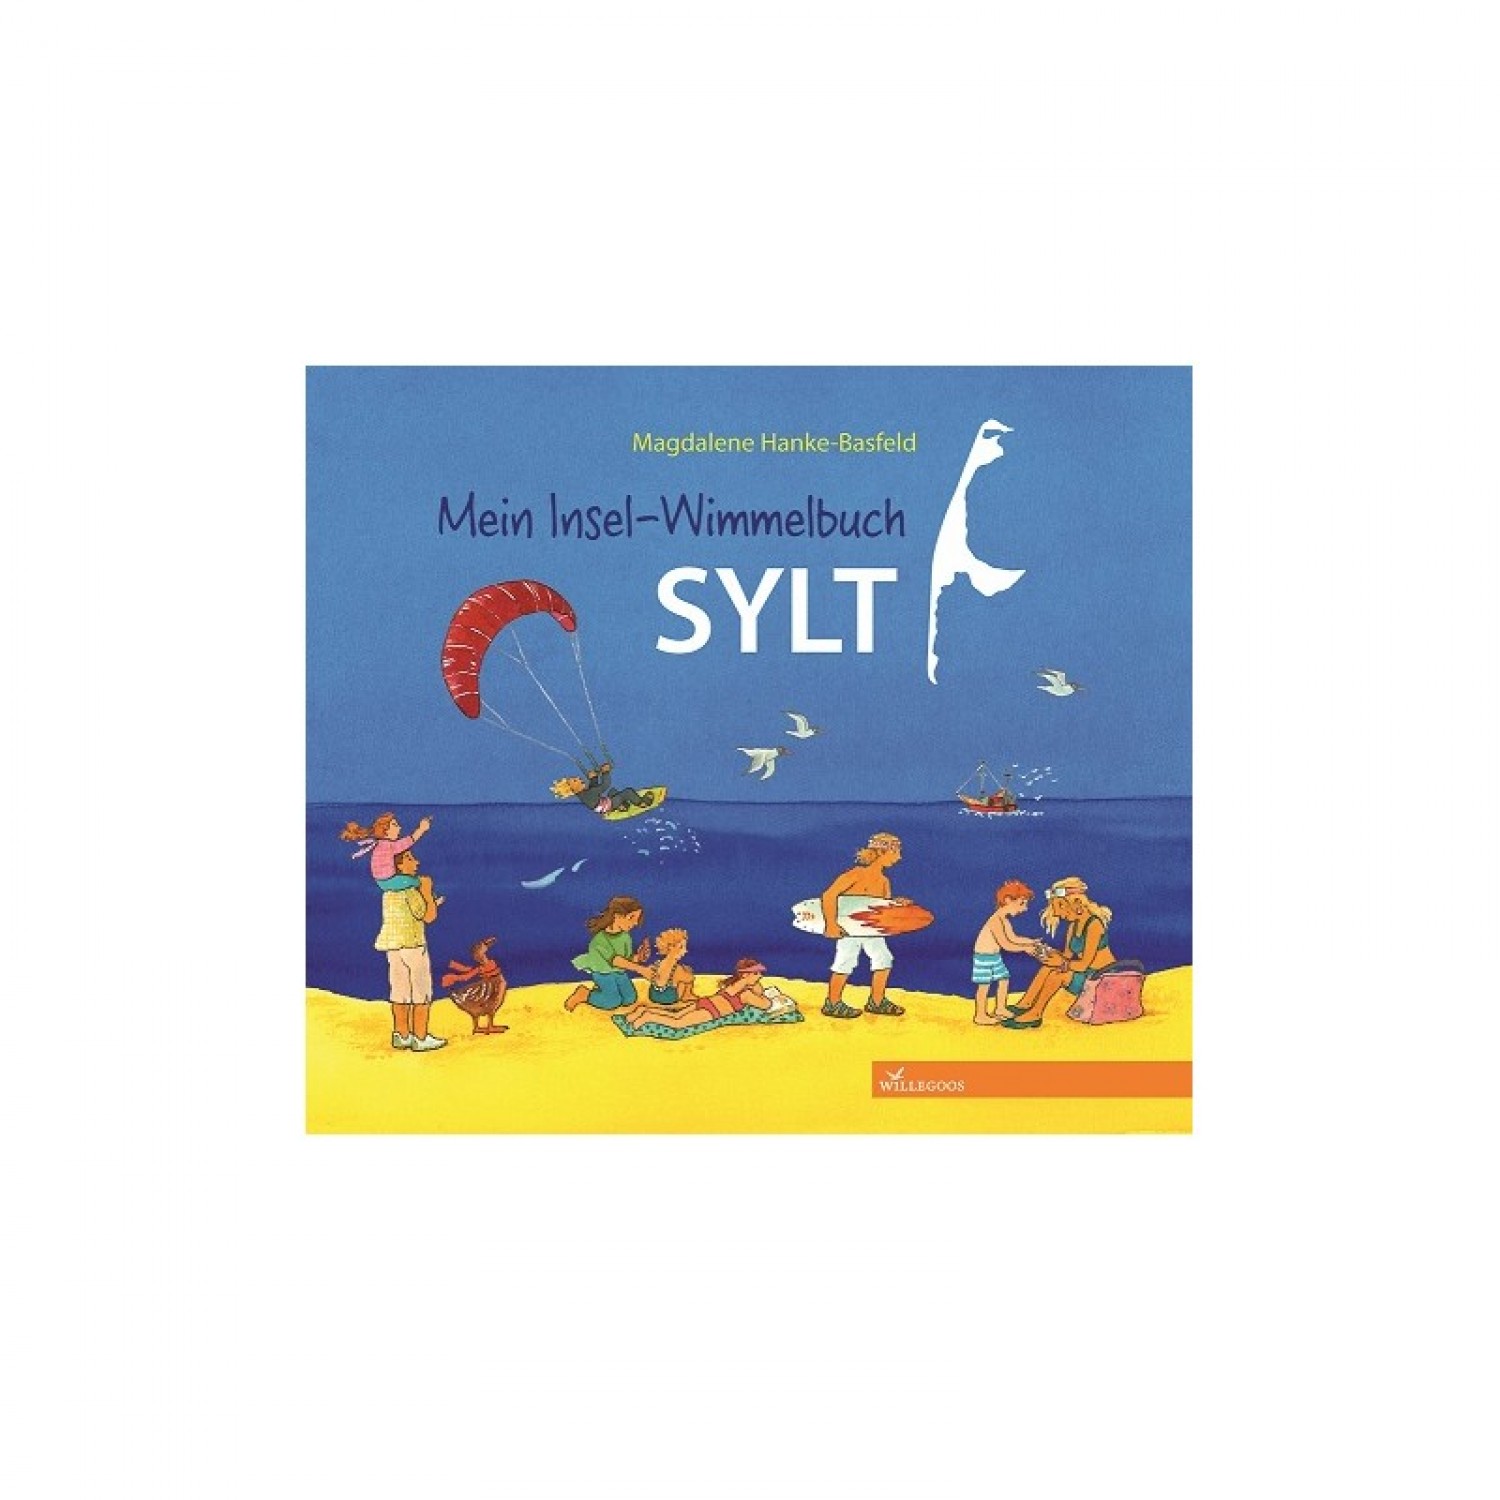 Children’s Picture Book Mein Insel-Wimmelbuch SYLT